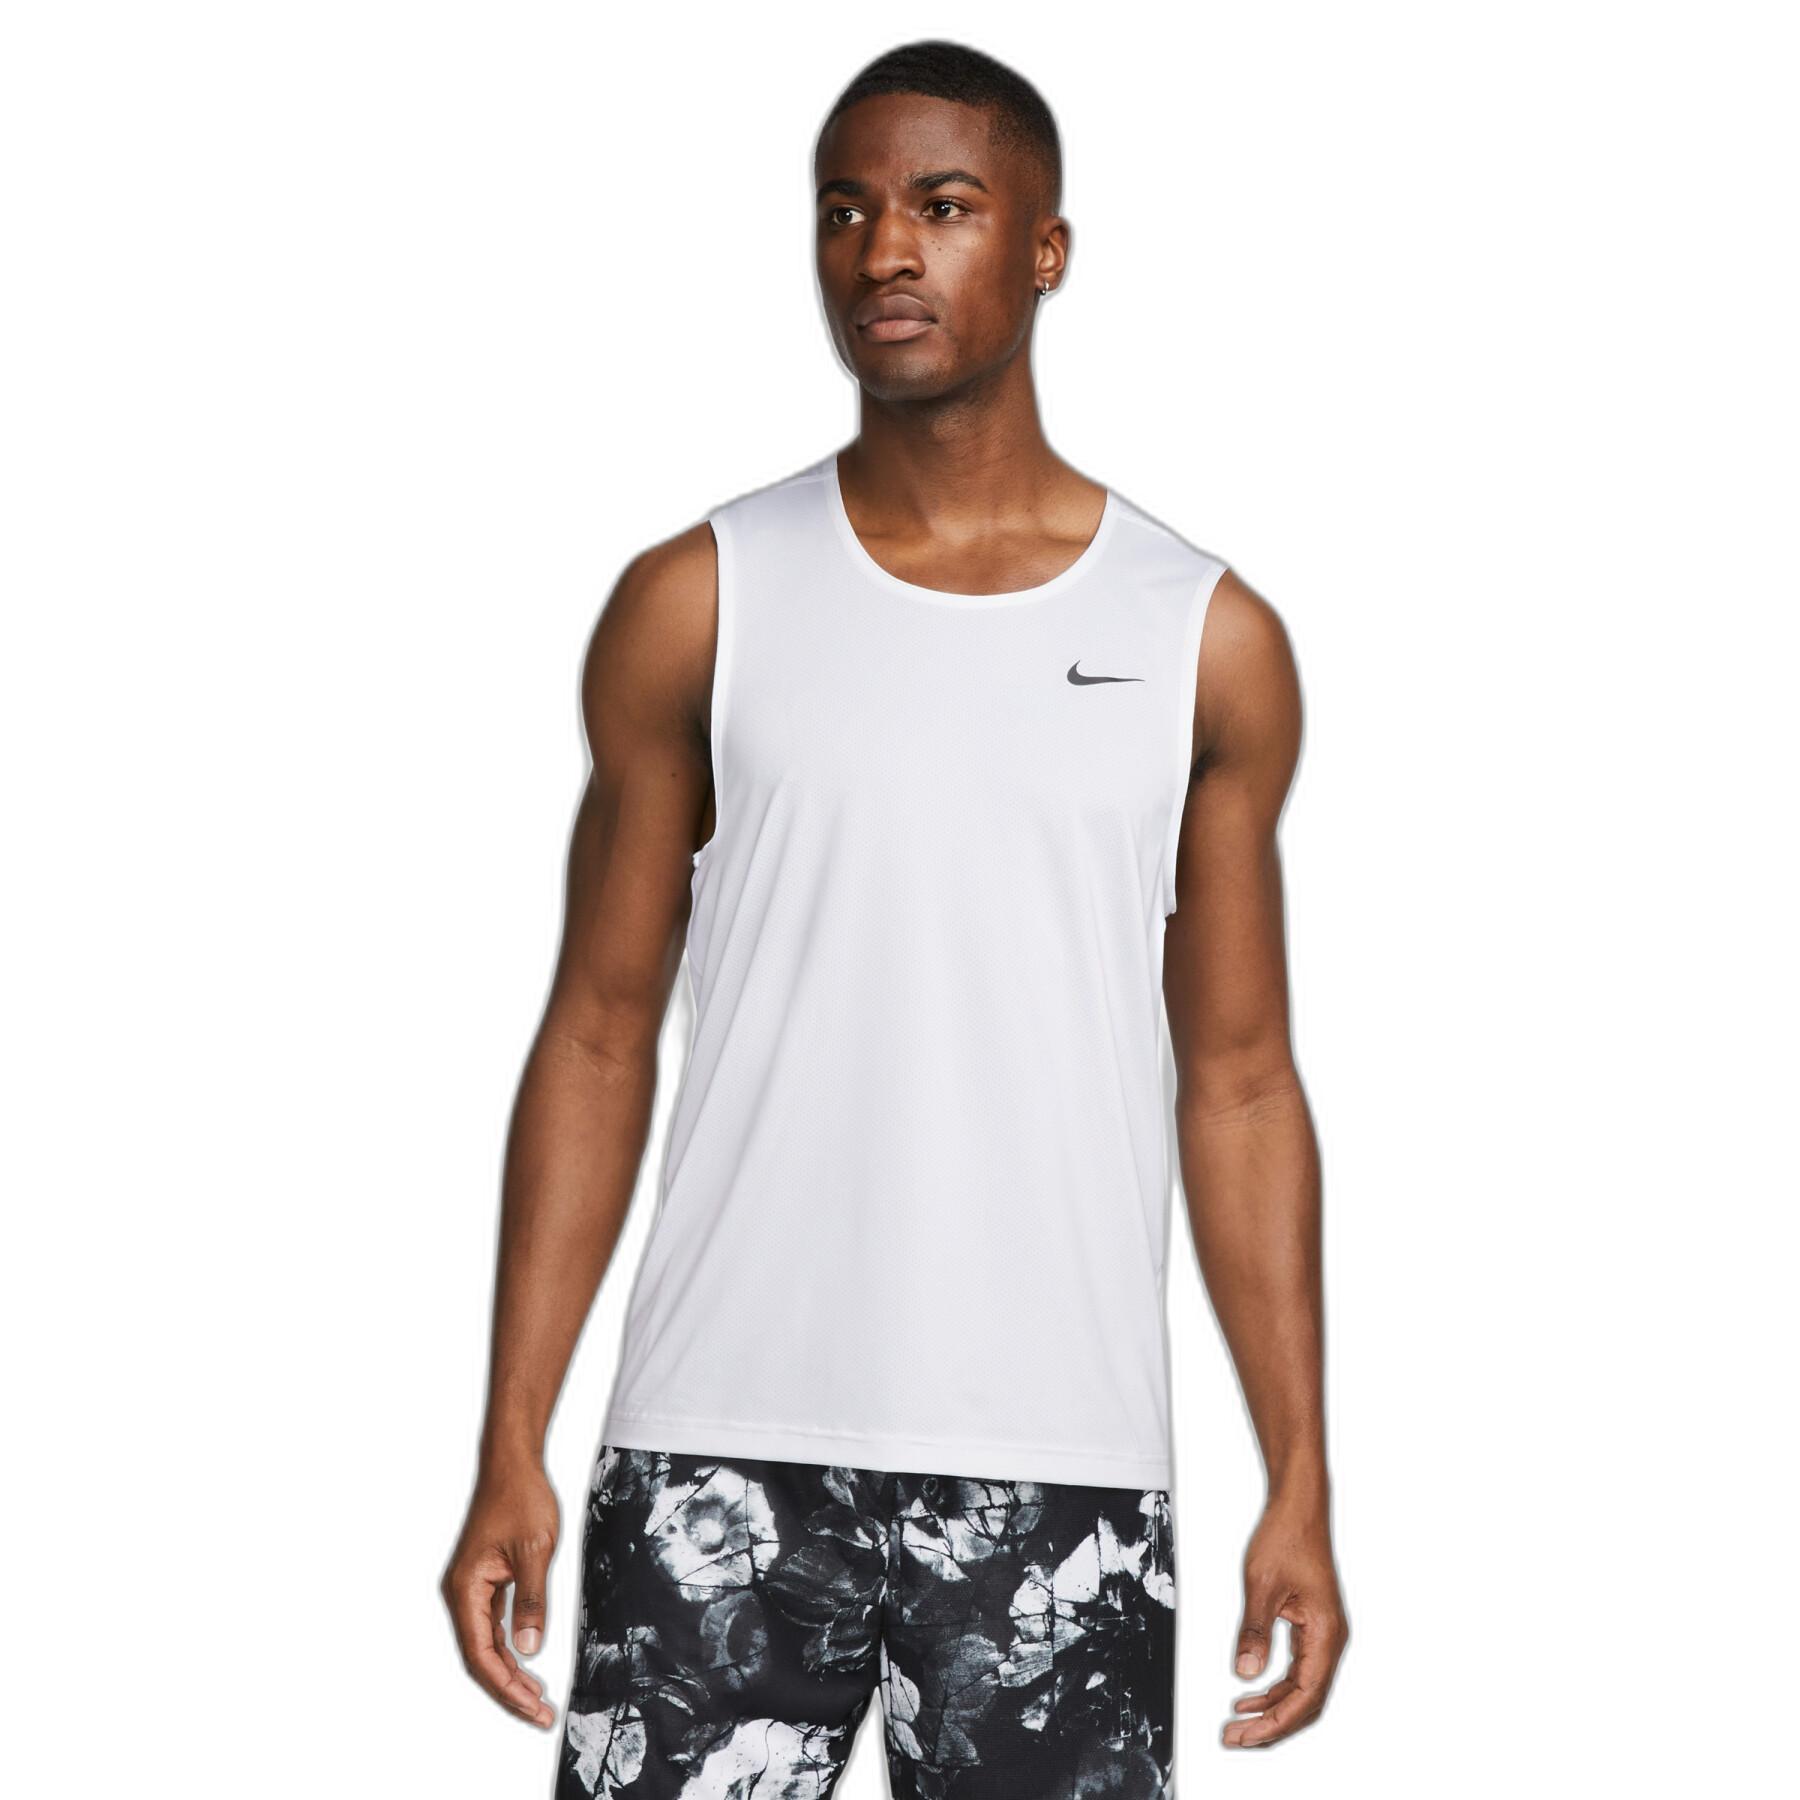 Débardeur Nike Dri-FIT Ready - Débardeurs - Vêtements de sport Homme -  Vêtements